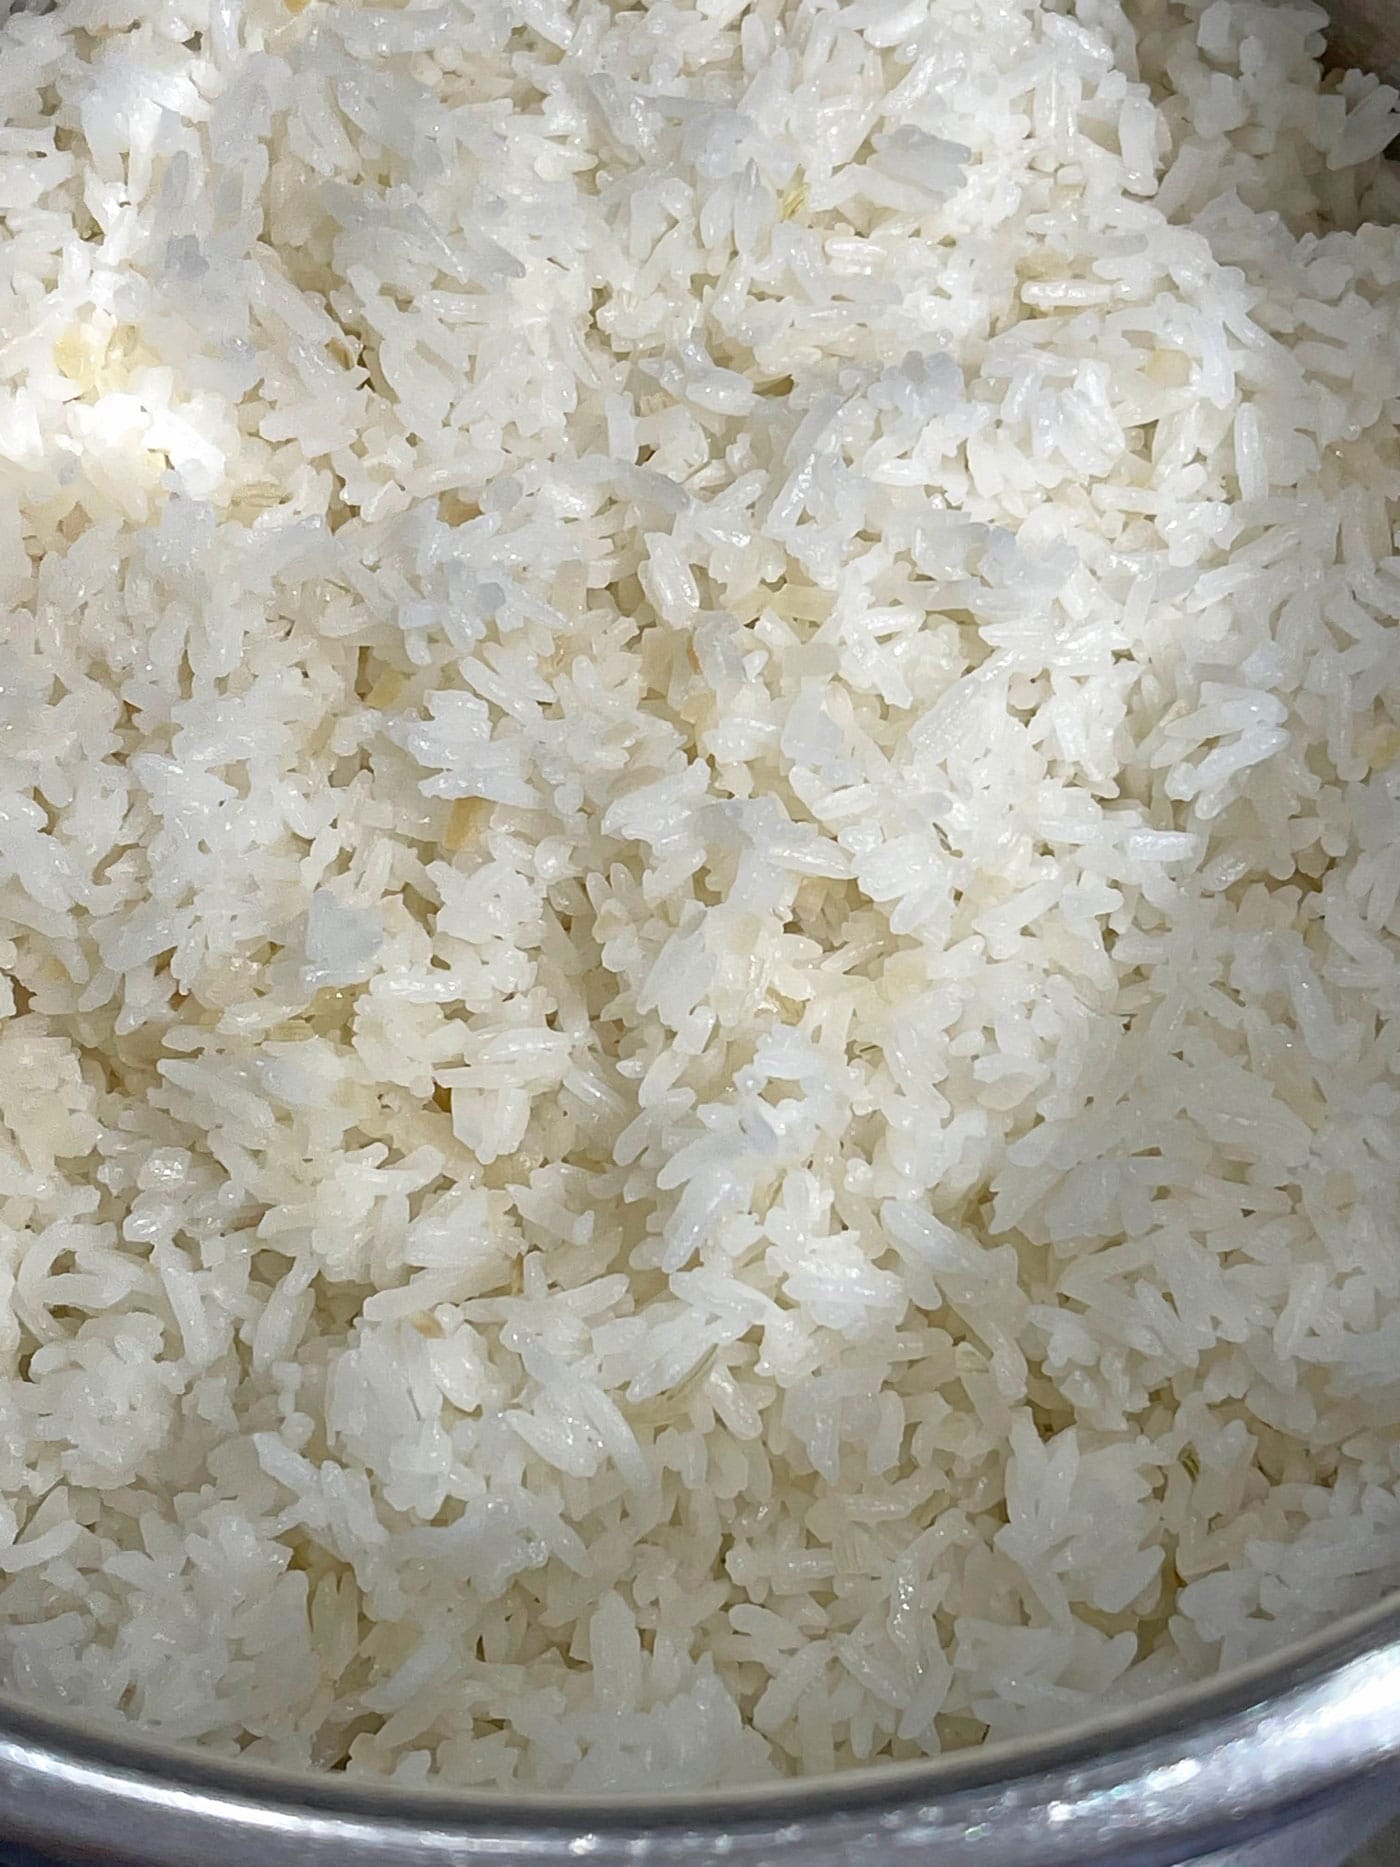 white jasmine rice in instant pot